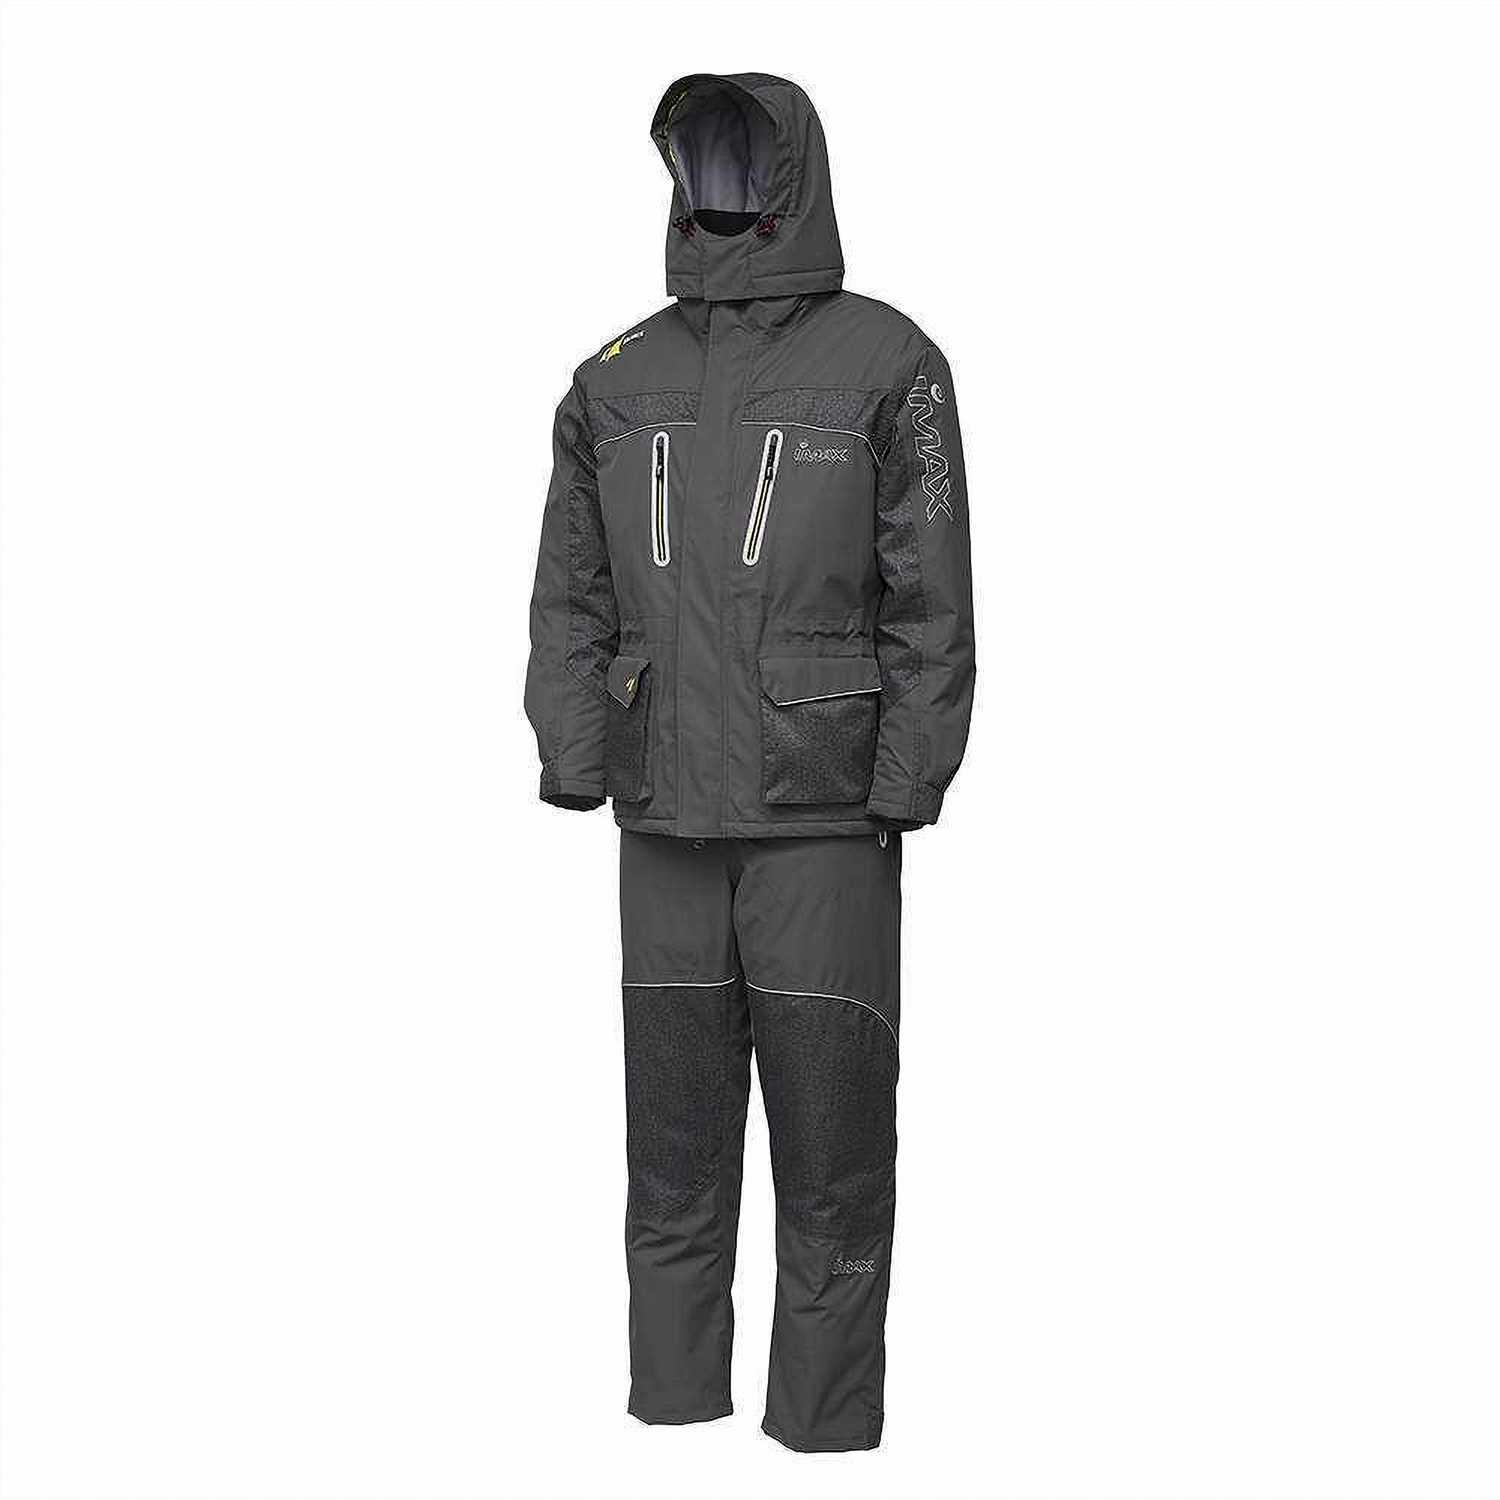 Korum Winter Thermal Suit Clothing